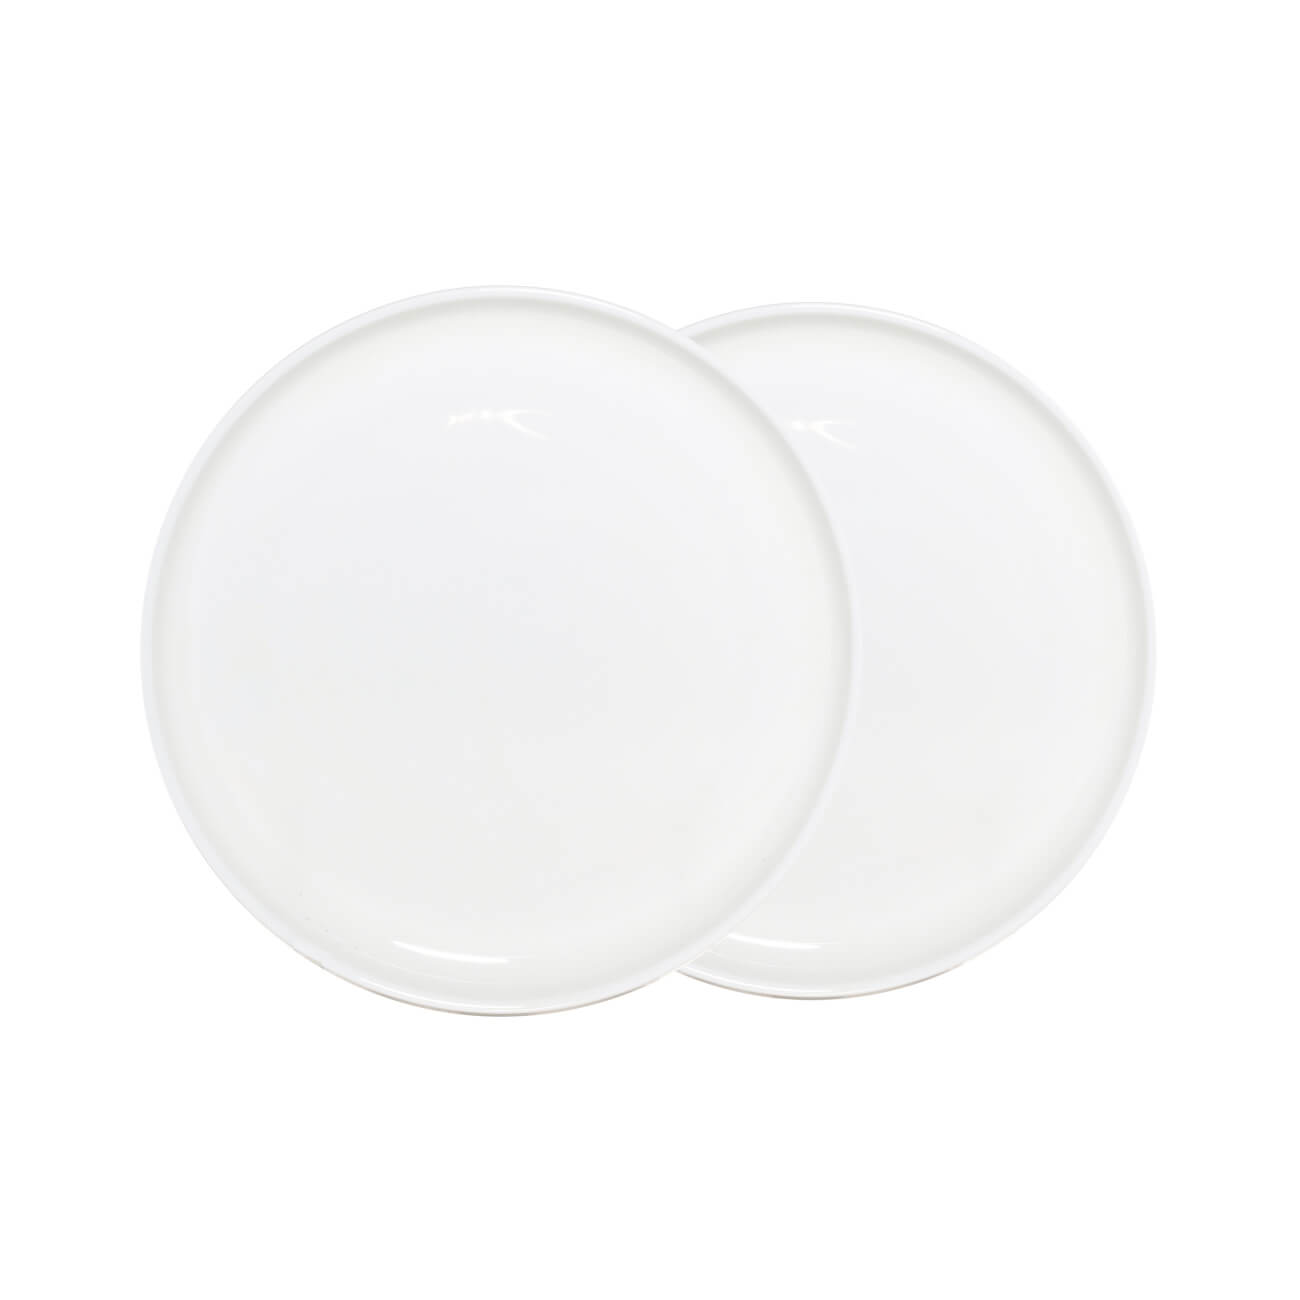 Тарелка десертная, 20 см, 2 шт, фарфор F, белая, Ideal white тарелка обеденная 26 см фарфор f белая ideal white